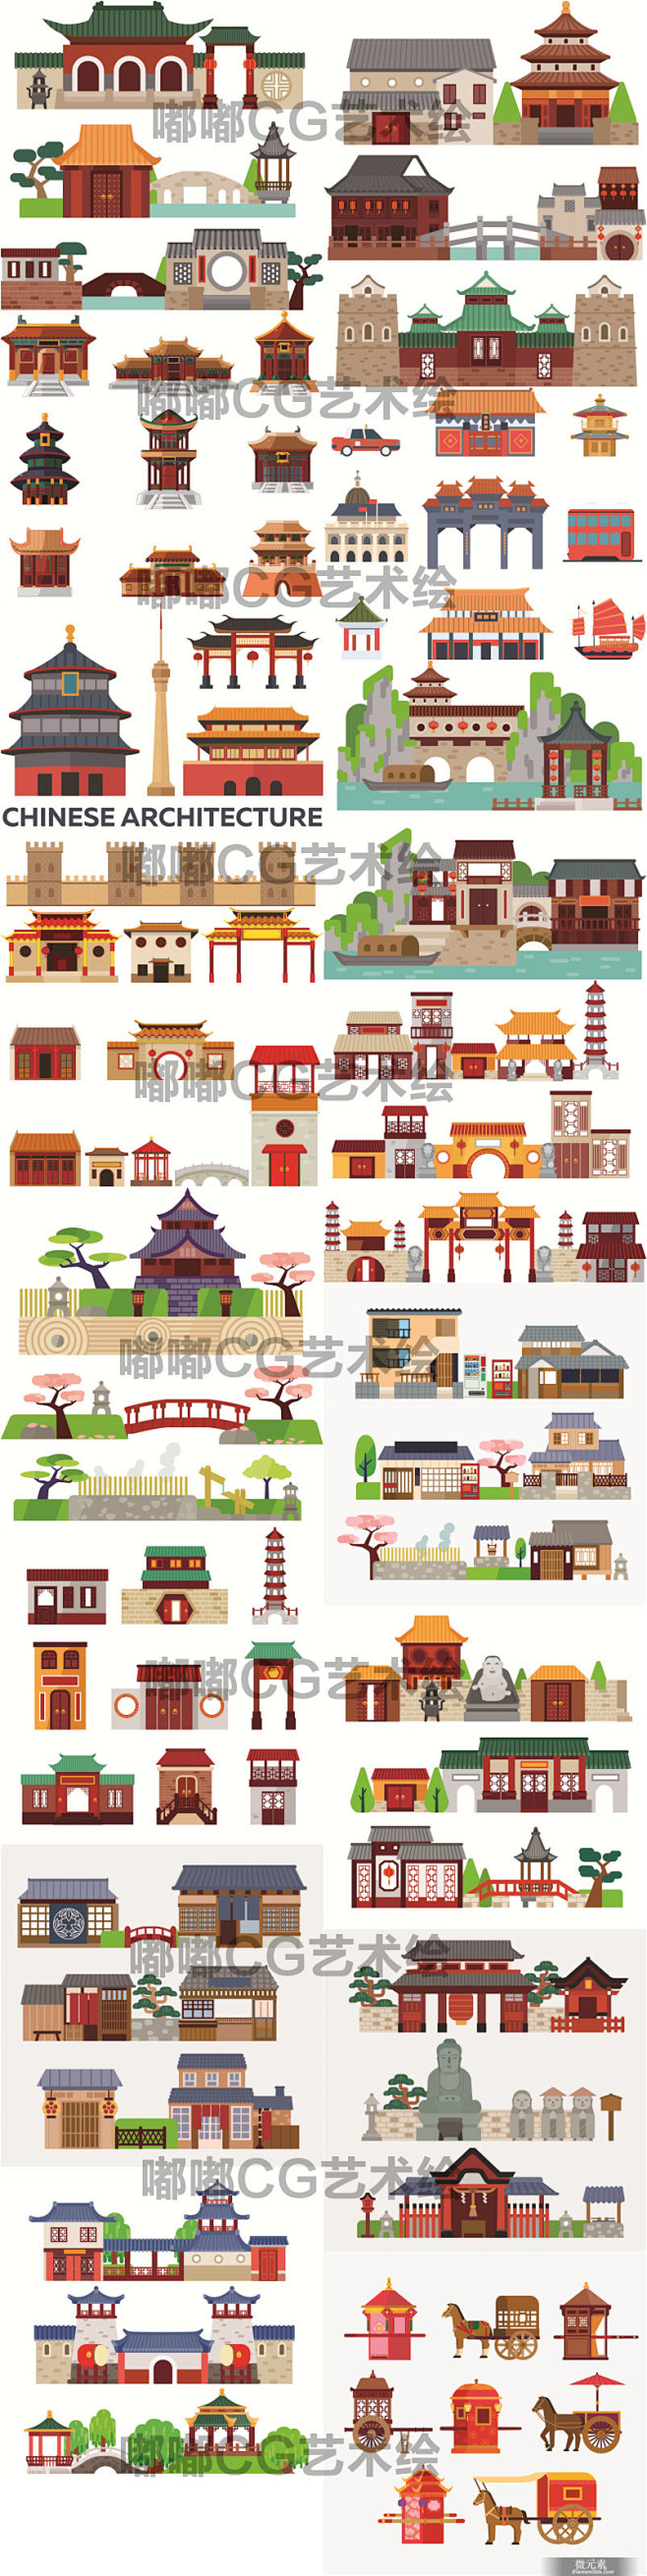 654矢量素材卡通扁平化中国日本传统古代建筑古镇风景banner背景淘宝